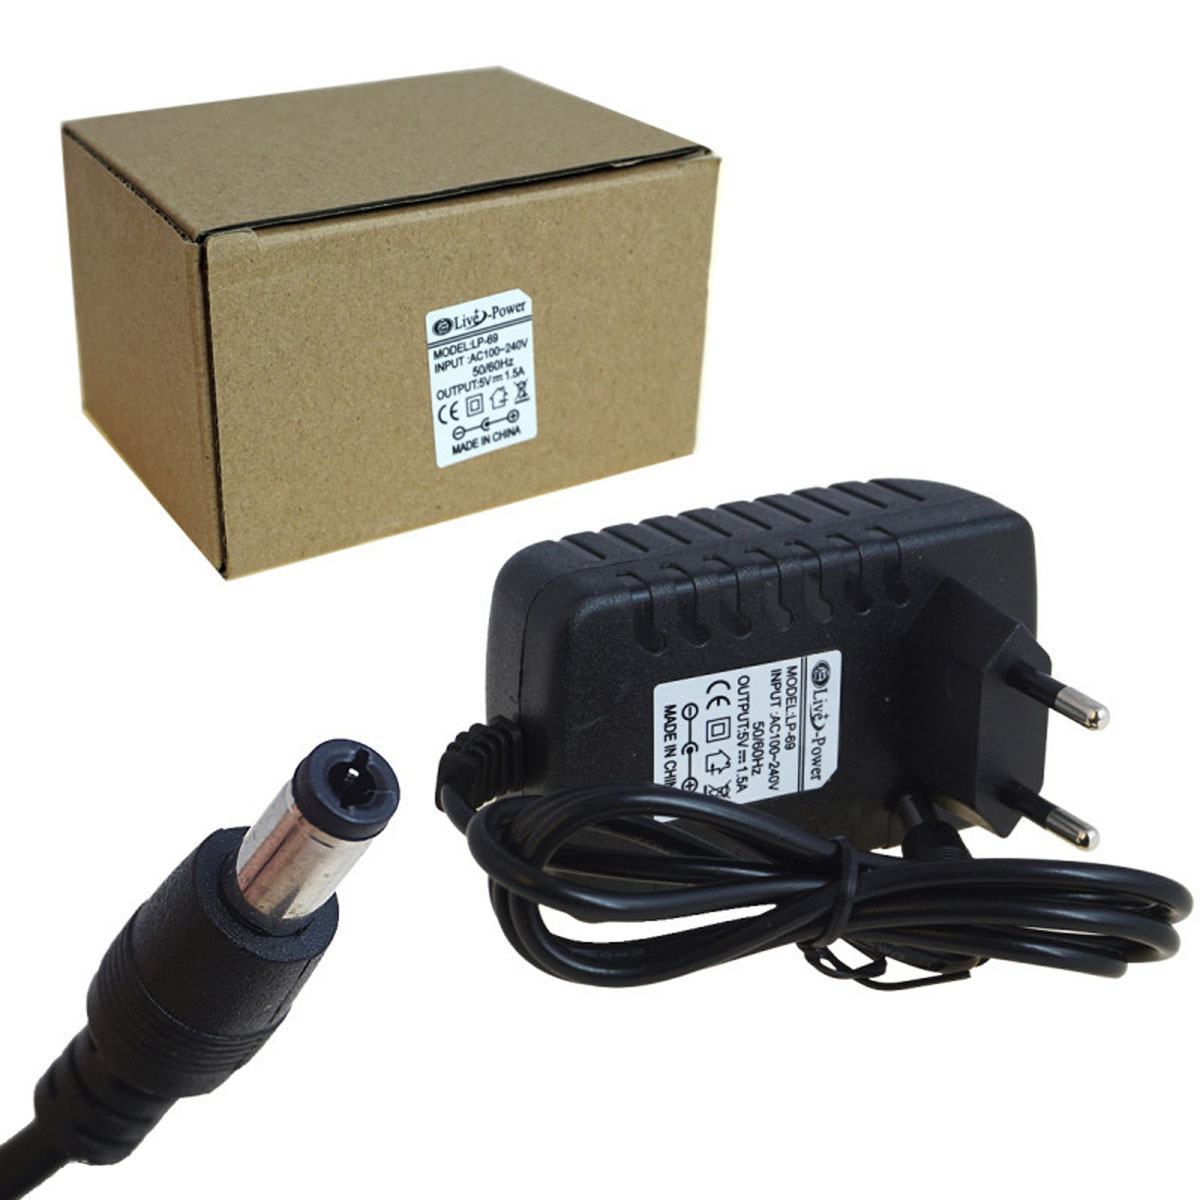 Блок питания Live-Power LP69, 5V-2A, штекер 5.5 на 2.5 мм, цвет черный